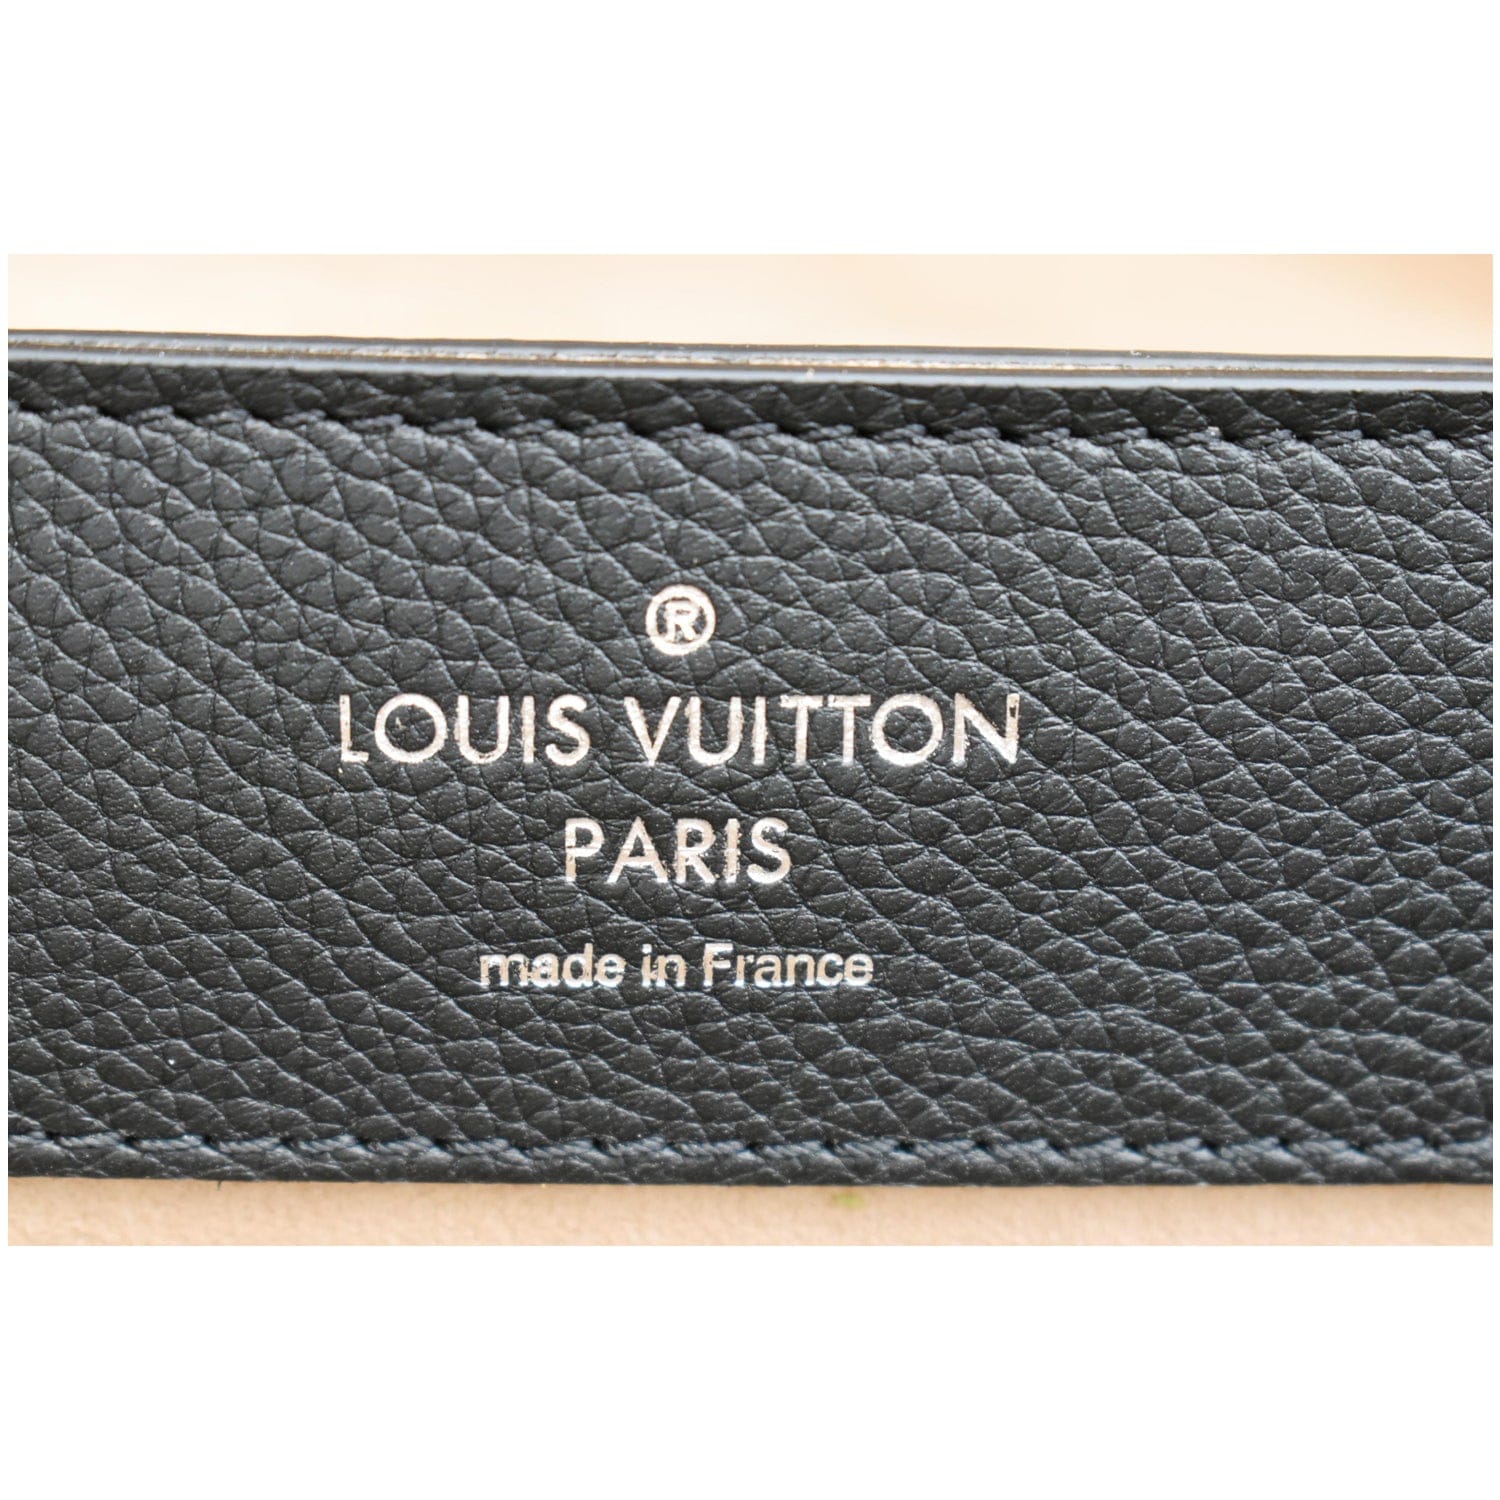 Louis Vuitton Lockme Ever BB Blue Bag | 3D model